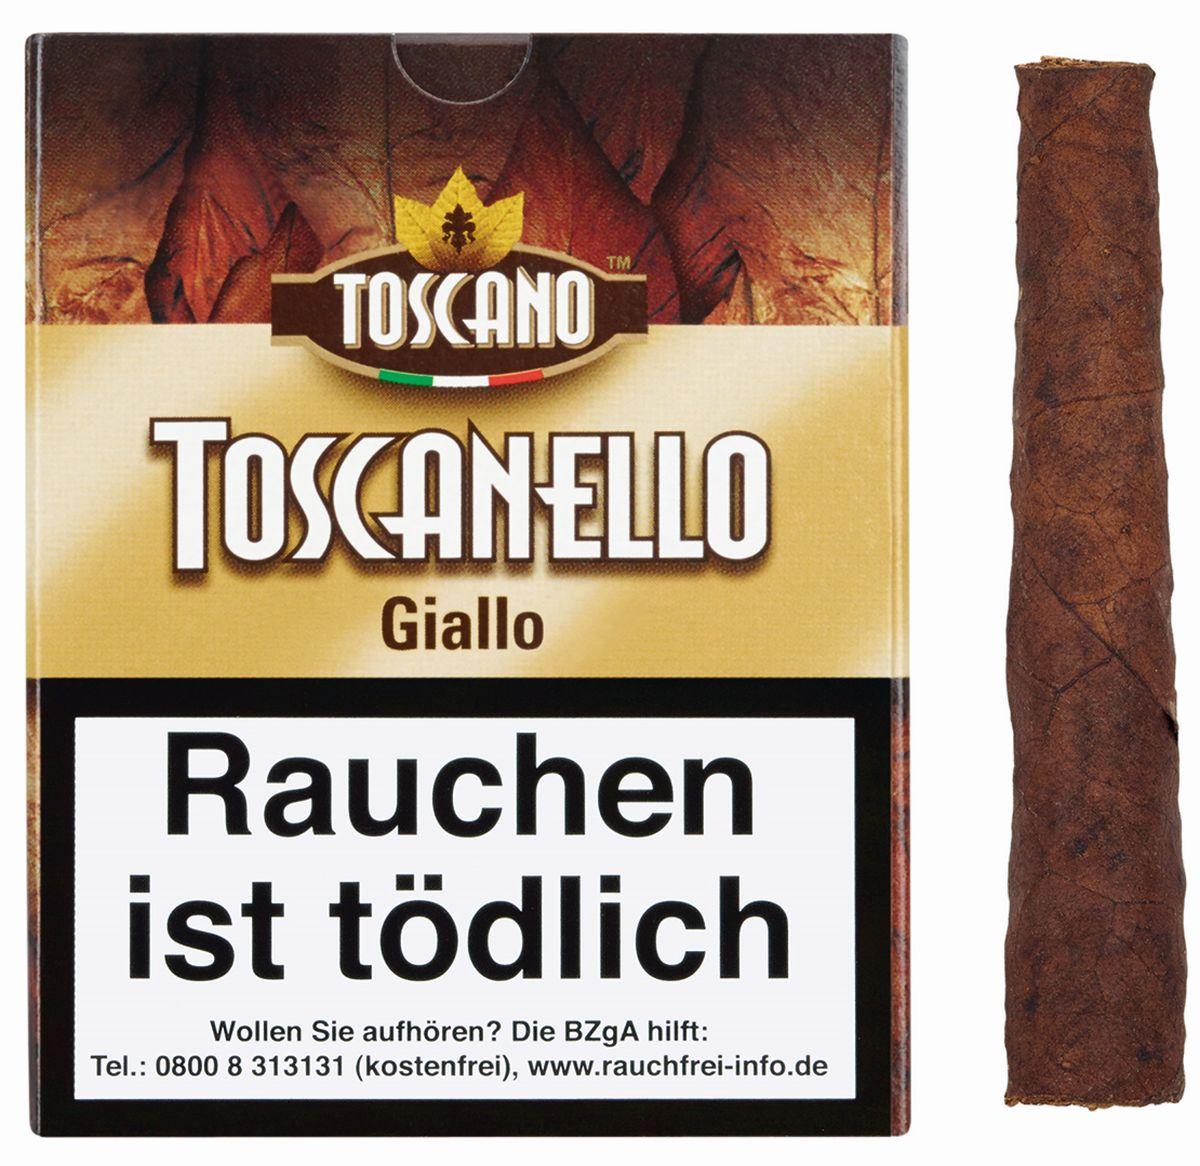 Toscano Toscanello Giallo 10 x 5 Zigarillos